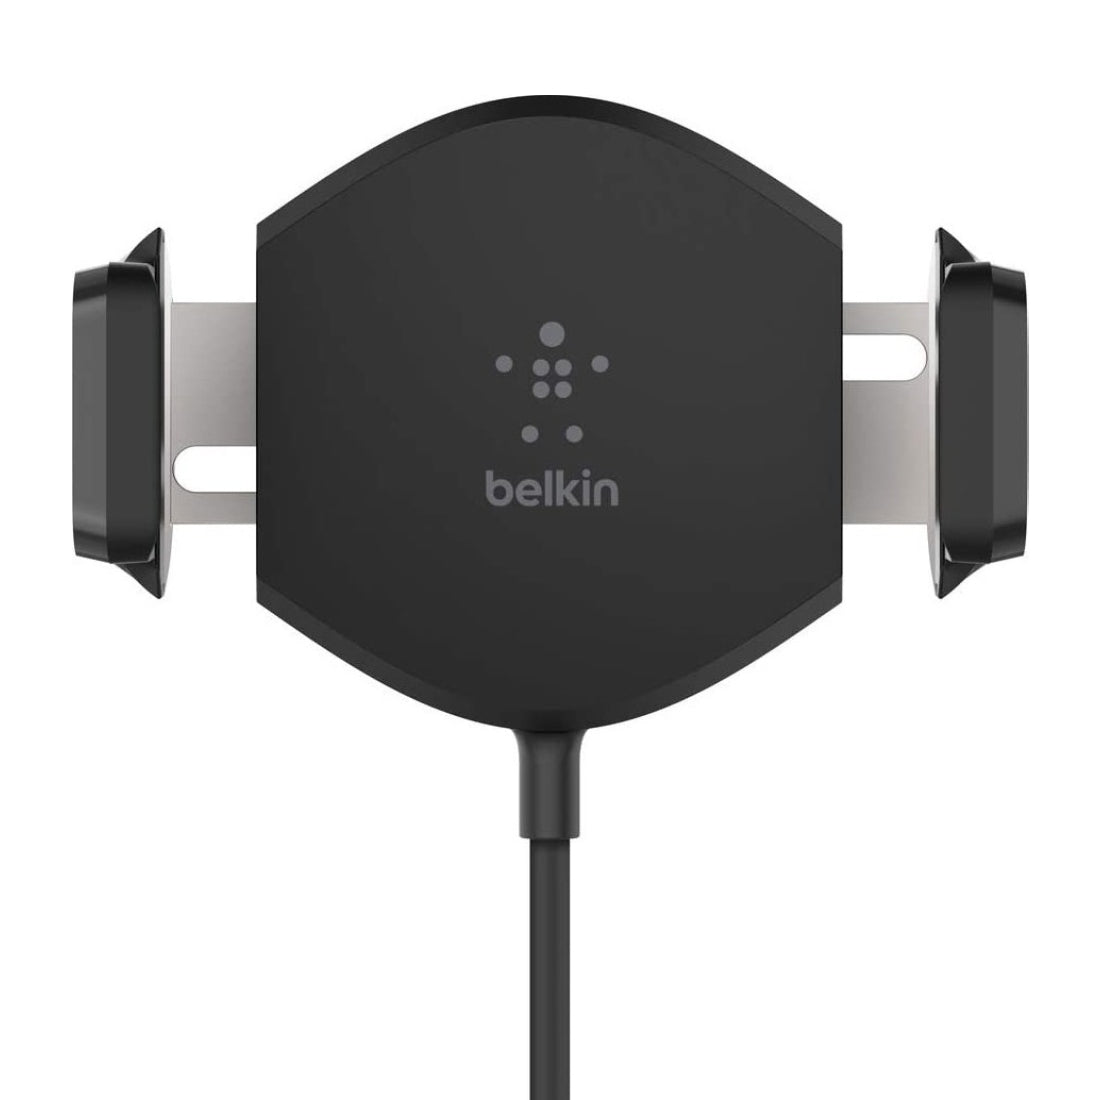 Belkin 10 Watts Wireless Charging Car Mount - Black - شاحن - Store 974 | ستور ٩٧٤